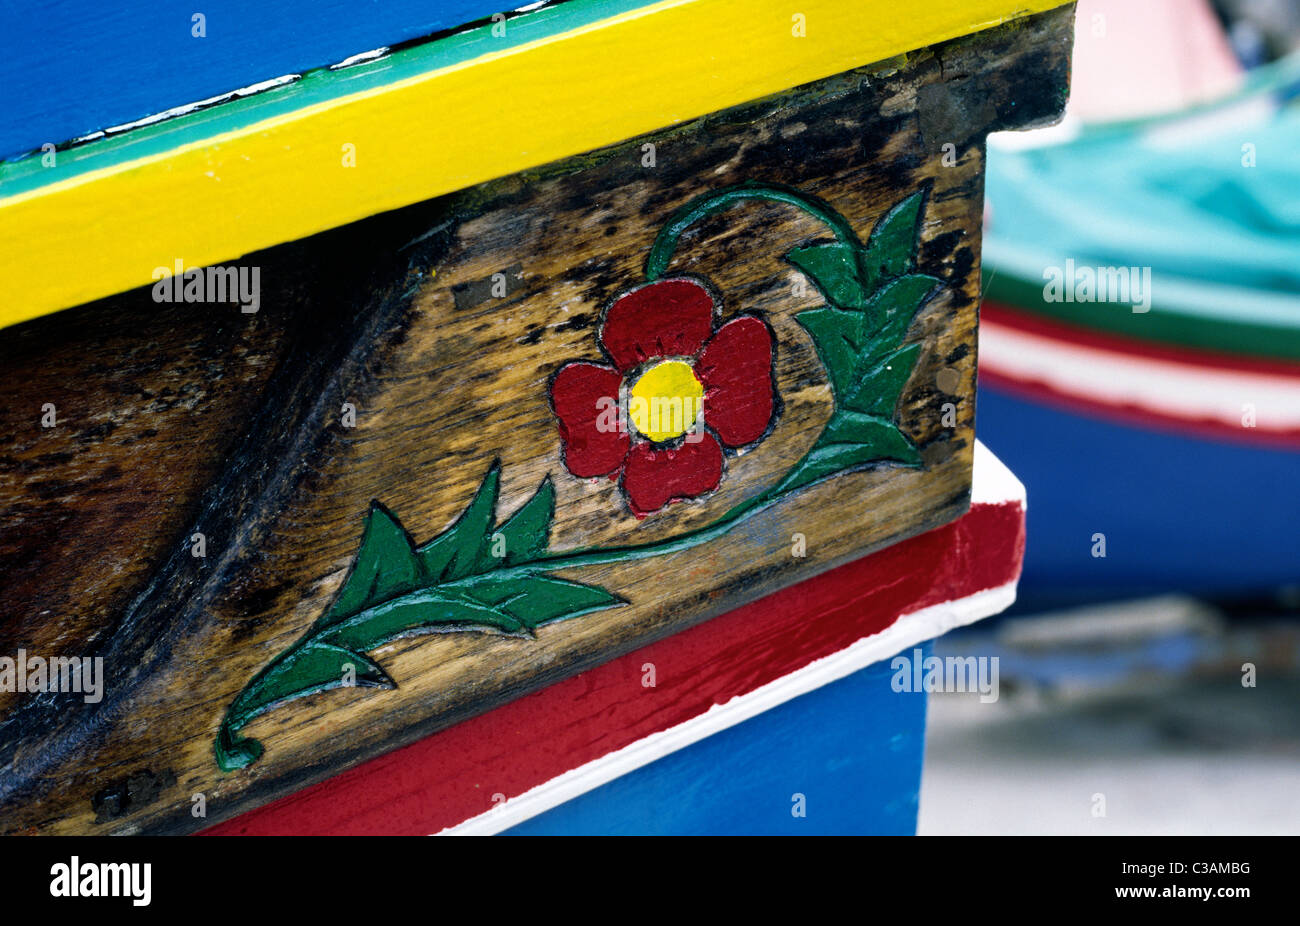 Intaglio del legno dettaglio su un tradizionale Luzzu in legno barca da pesca nel porto di Xlendi sull'isola Maltese di Gozo. Foto Stock